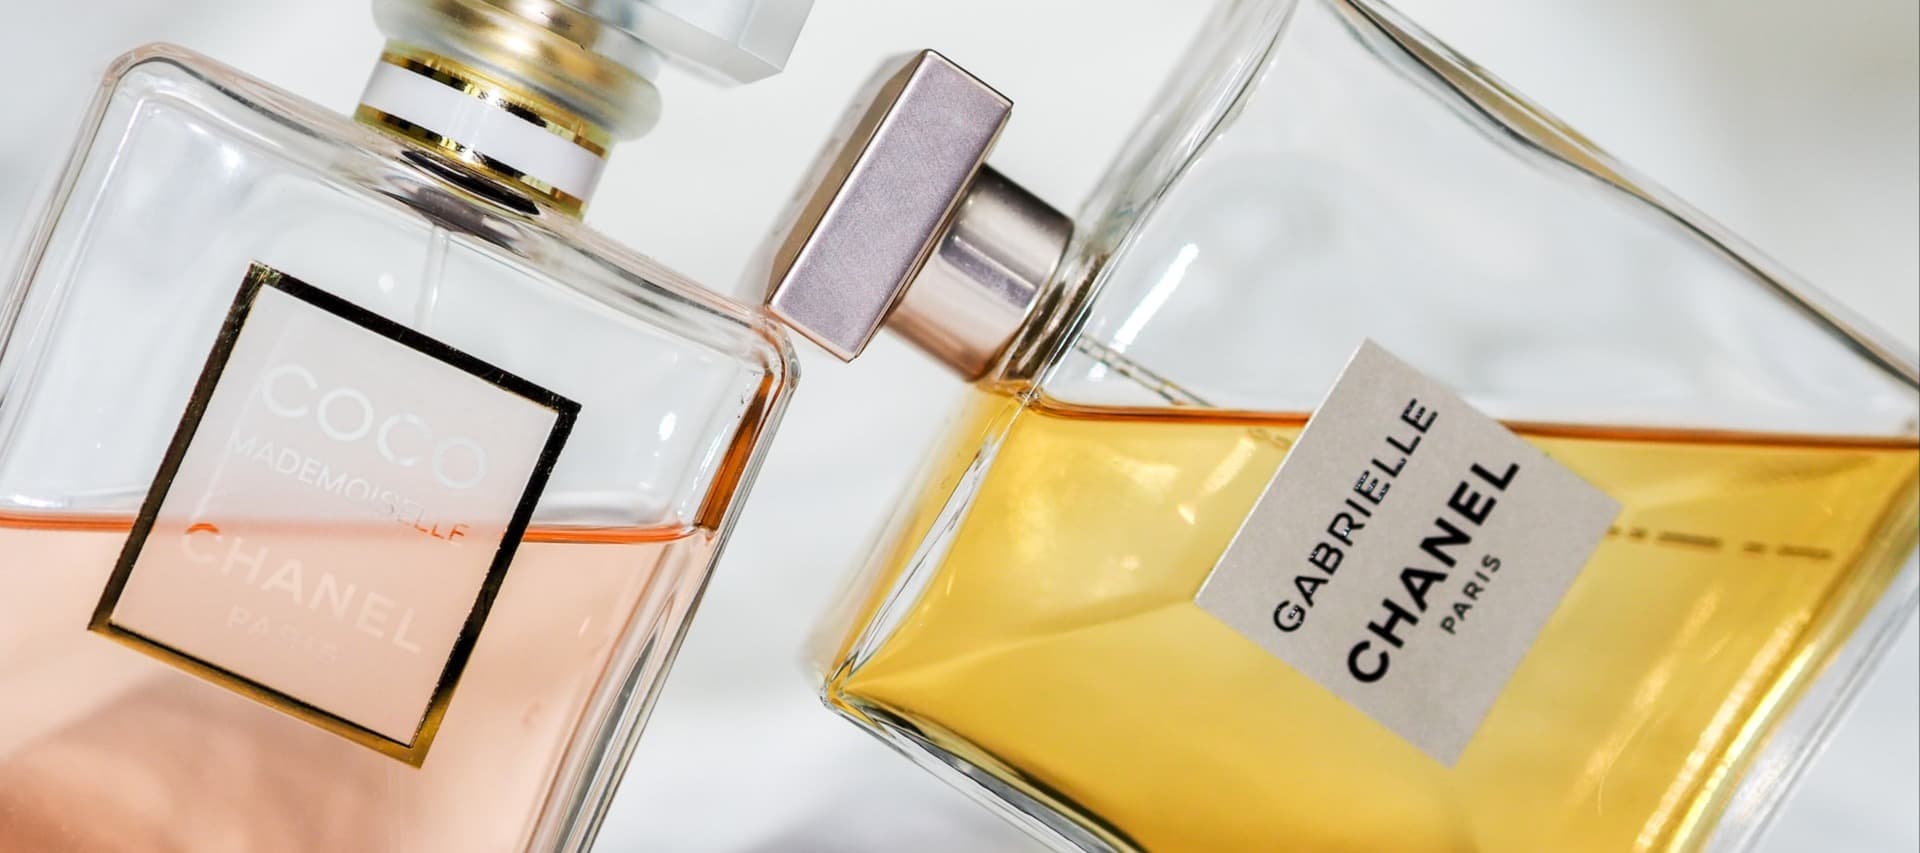 Фото новости: "СДЭК начал продавать парфюмерию ушедших брендов"